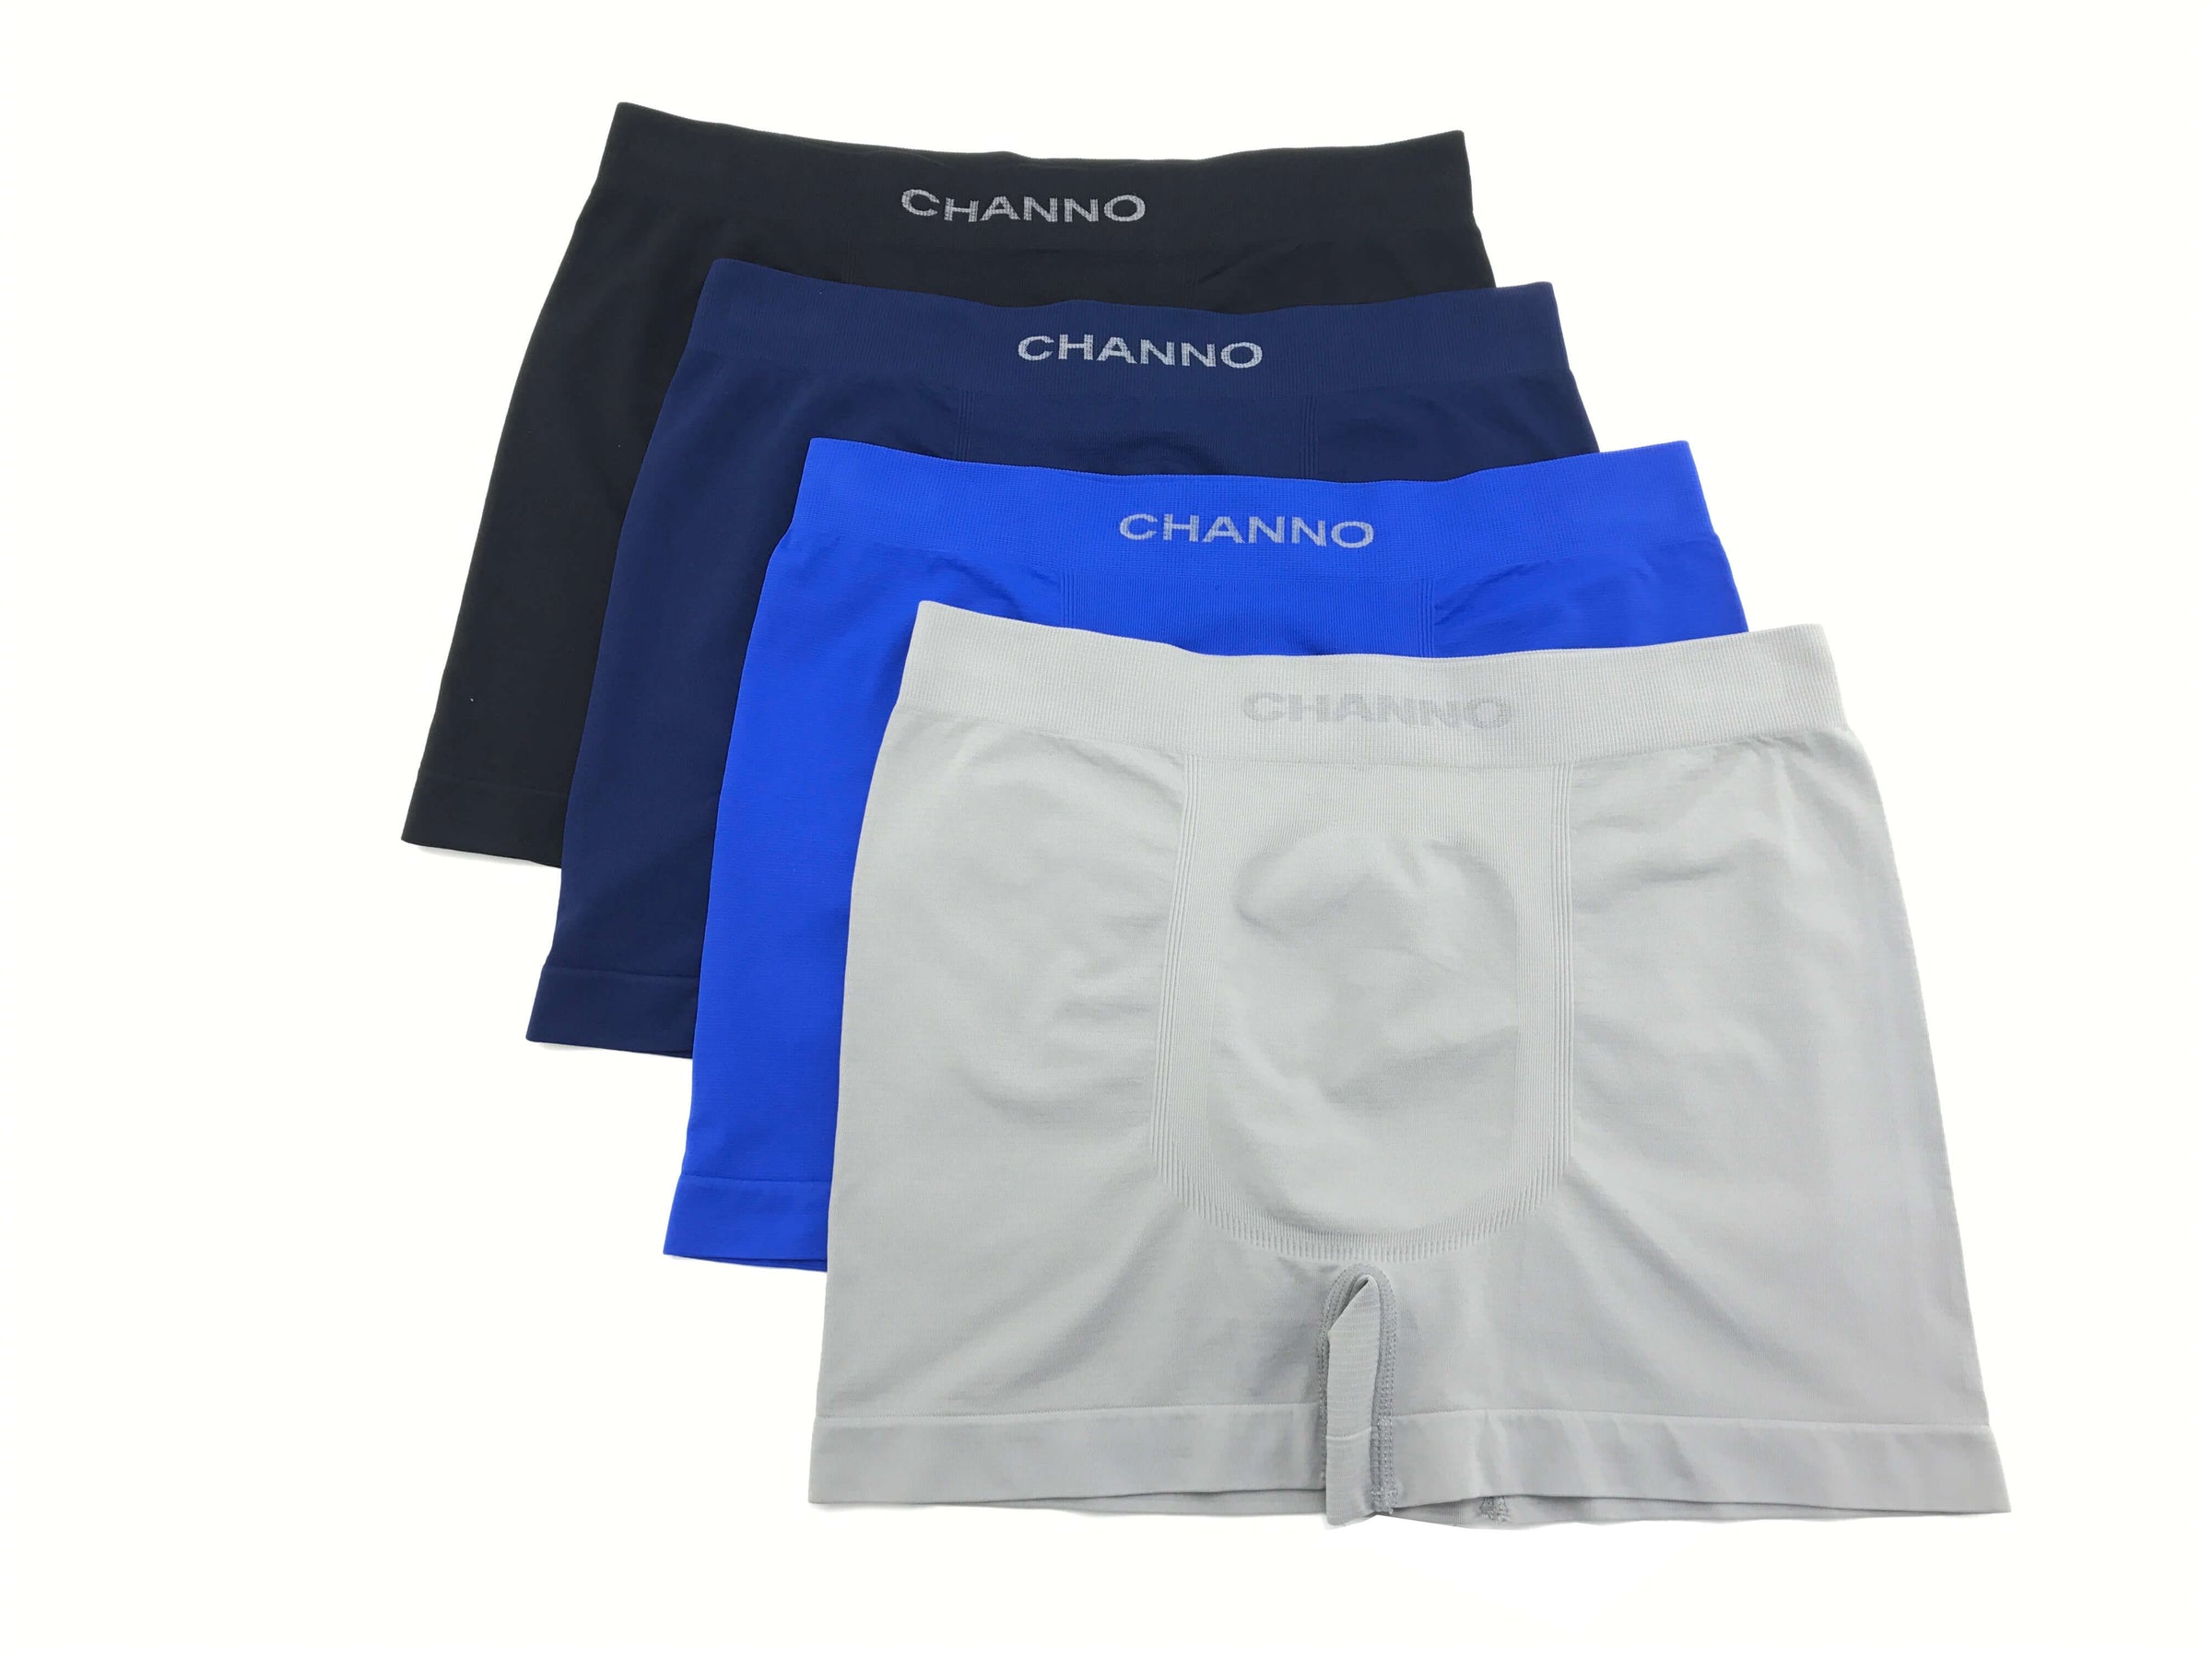 Calzoncillos boxer licra sin costura uniforme - CHANNO Man – Channo